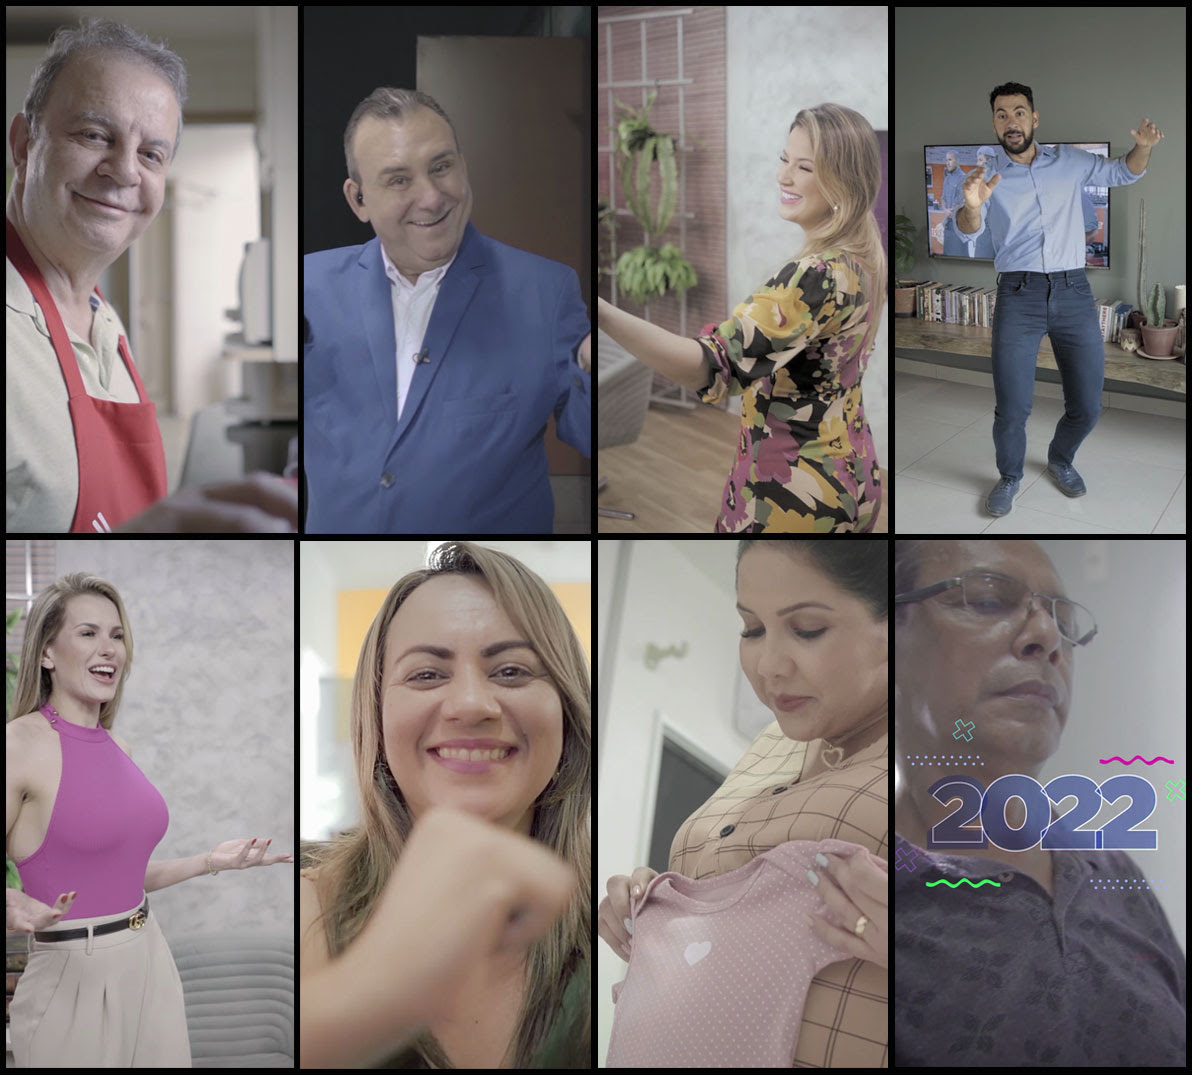 SIC TV, afiliada Record TV em Rondônia, lança sua campanha de final de ano com vídeo que humaniza apresentadores - News Rondônia